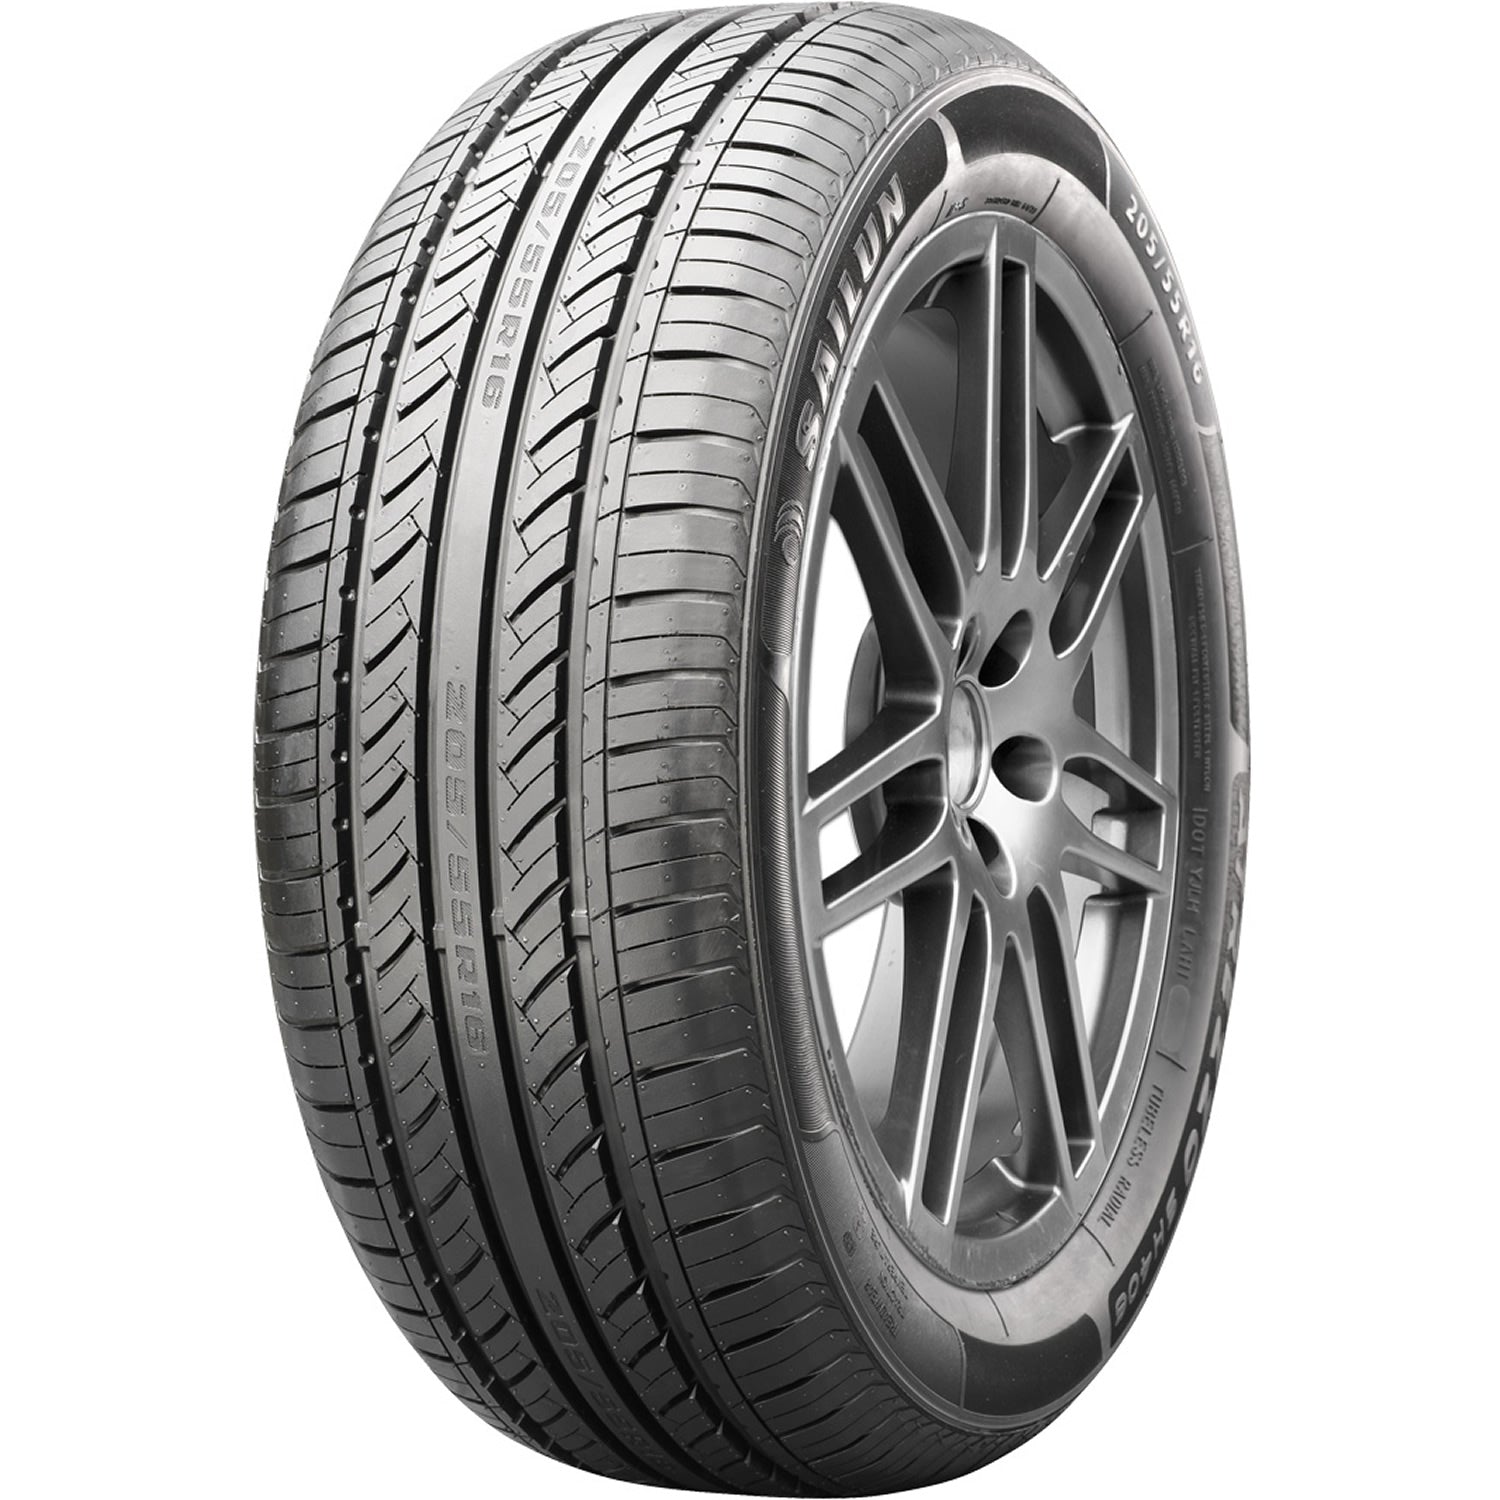 SAILUN ATREZZO SH406 195/55R15 (23.4X7.9R 15) Tires